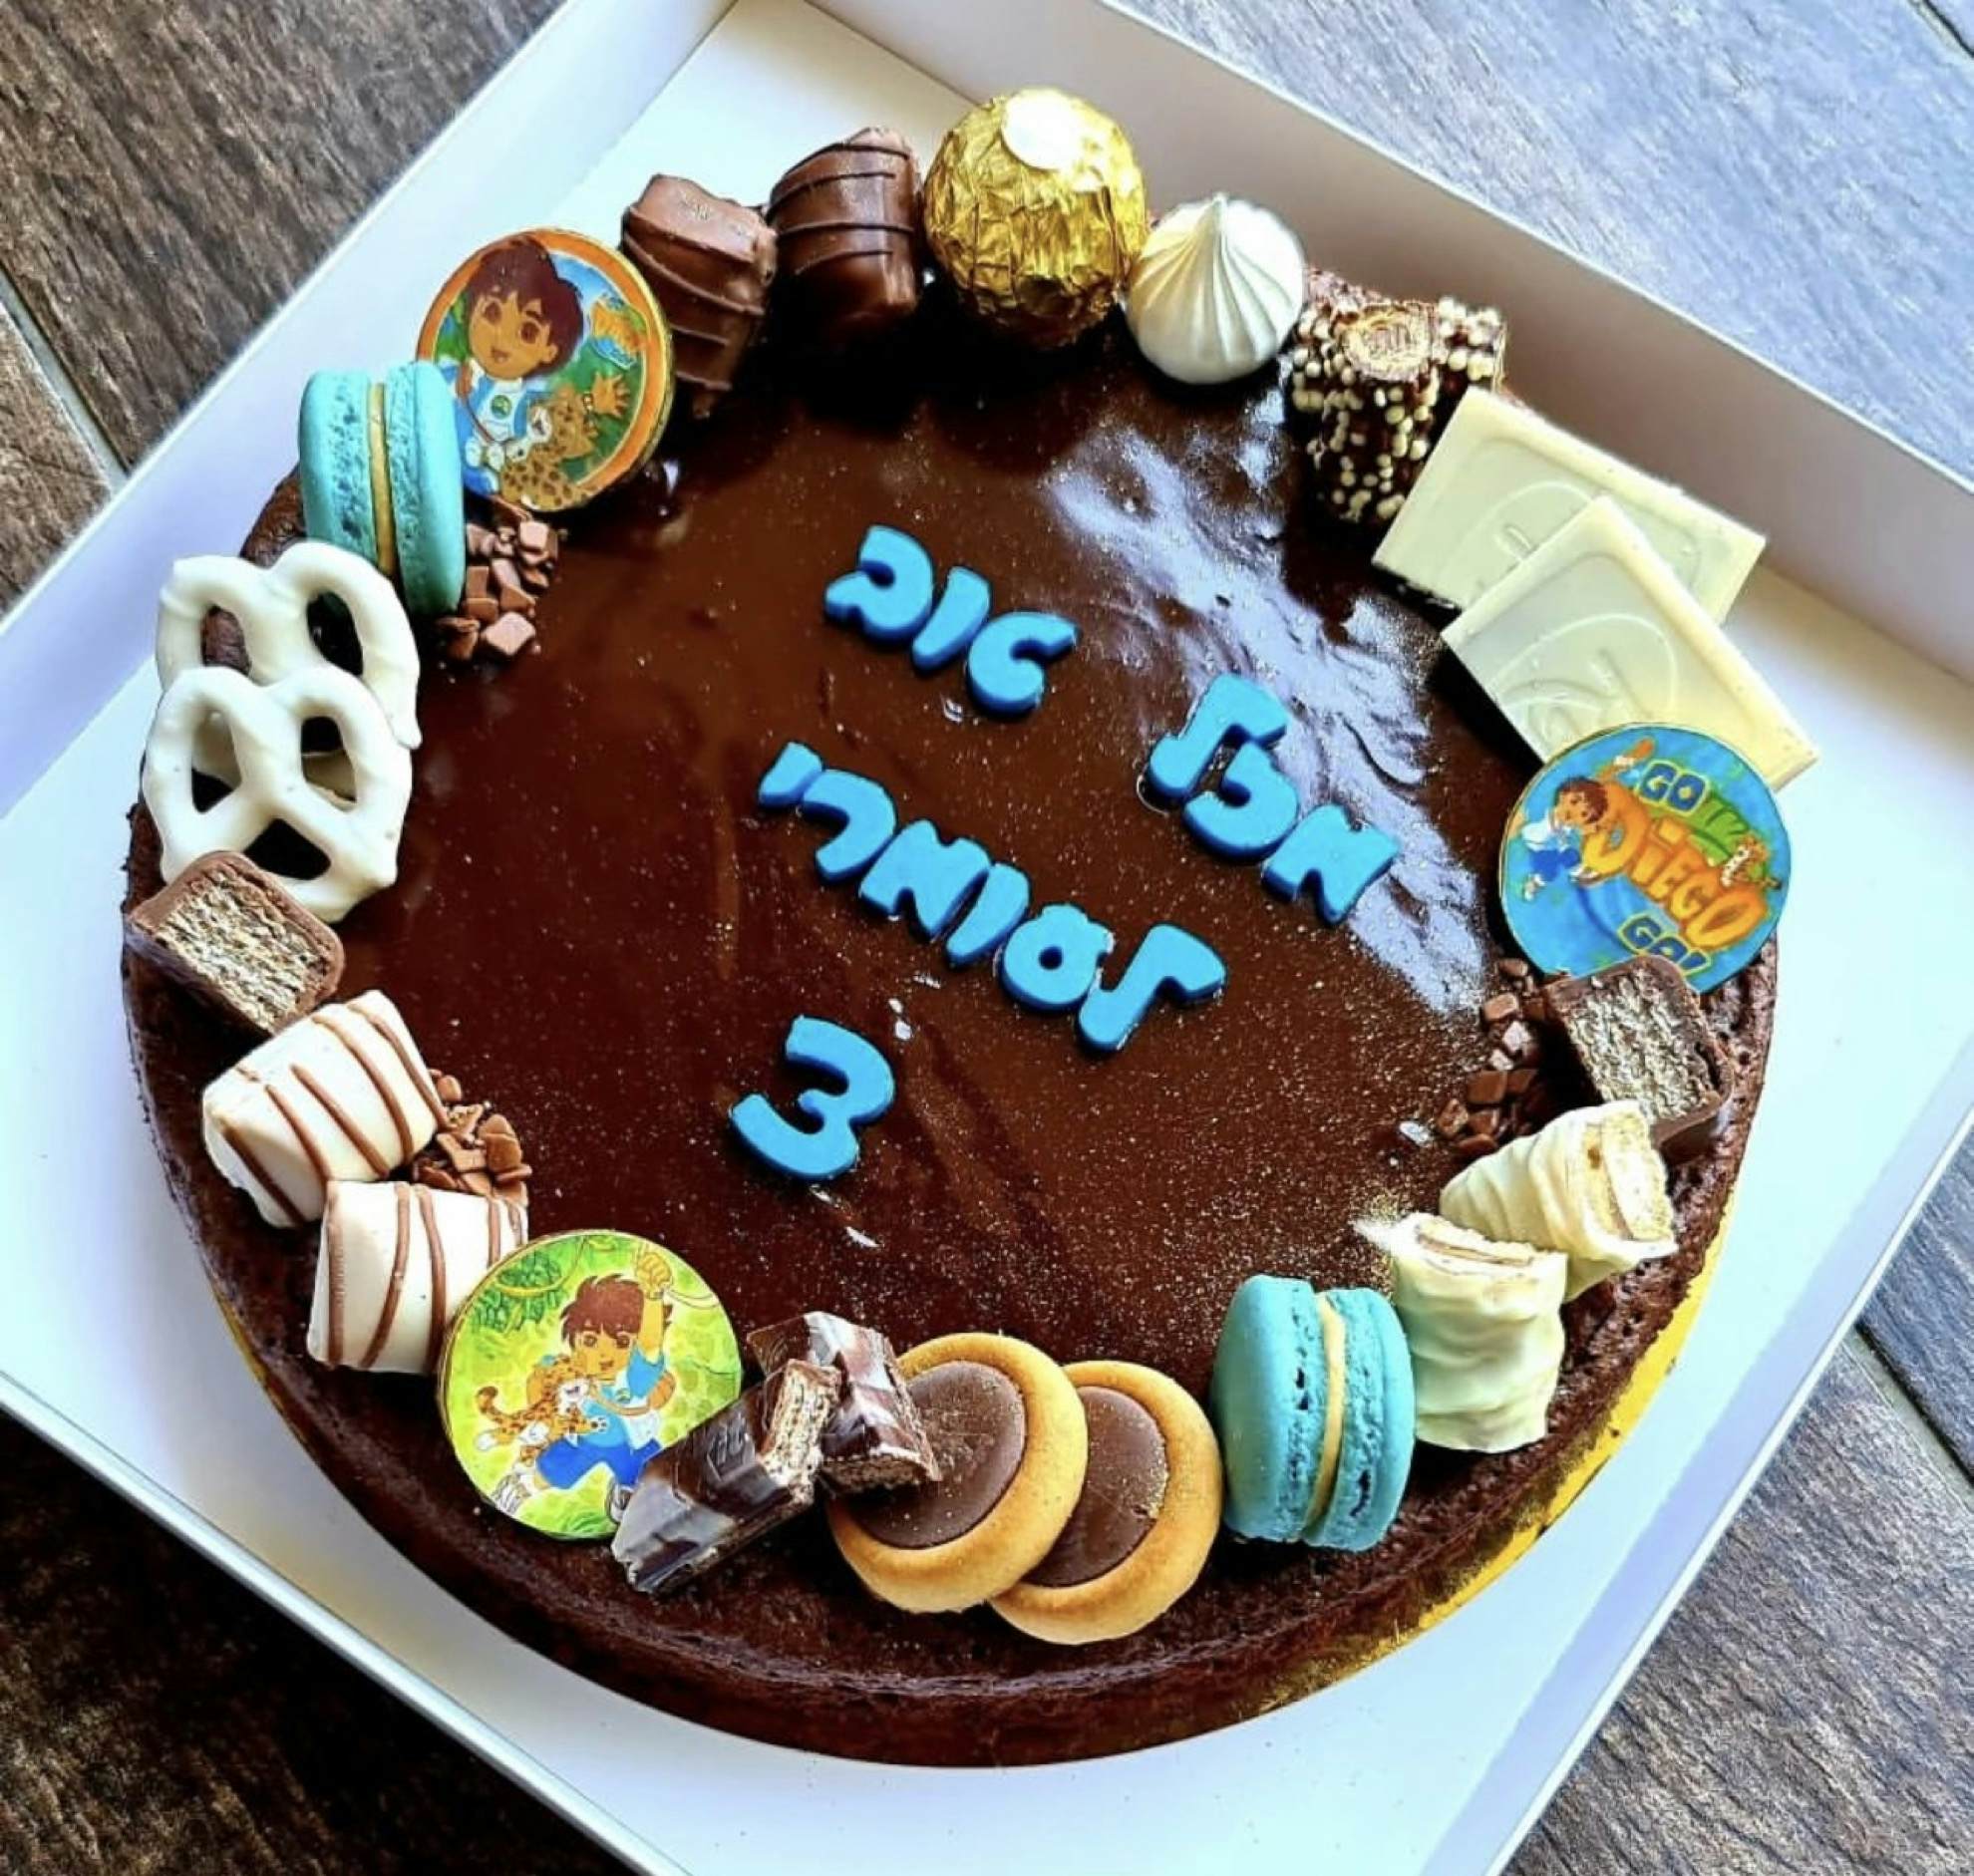 עוגת פאדג׳ שוקולד לגיל 3 (דייגו) - עם גנאש שוקולד חטיפי שוקולד, ומקרונים בעבודת יד
ללא קמח ** העוגה מכילה שקדים